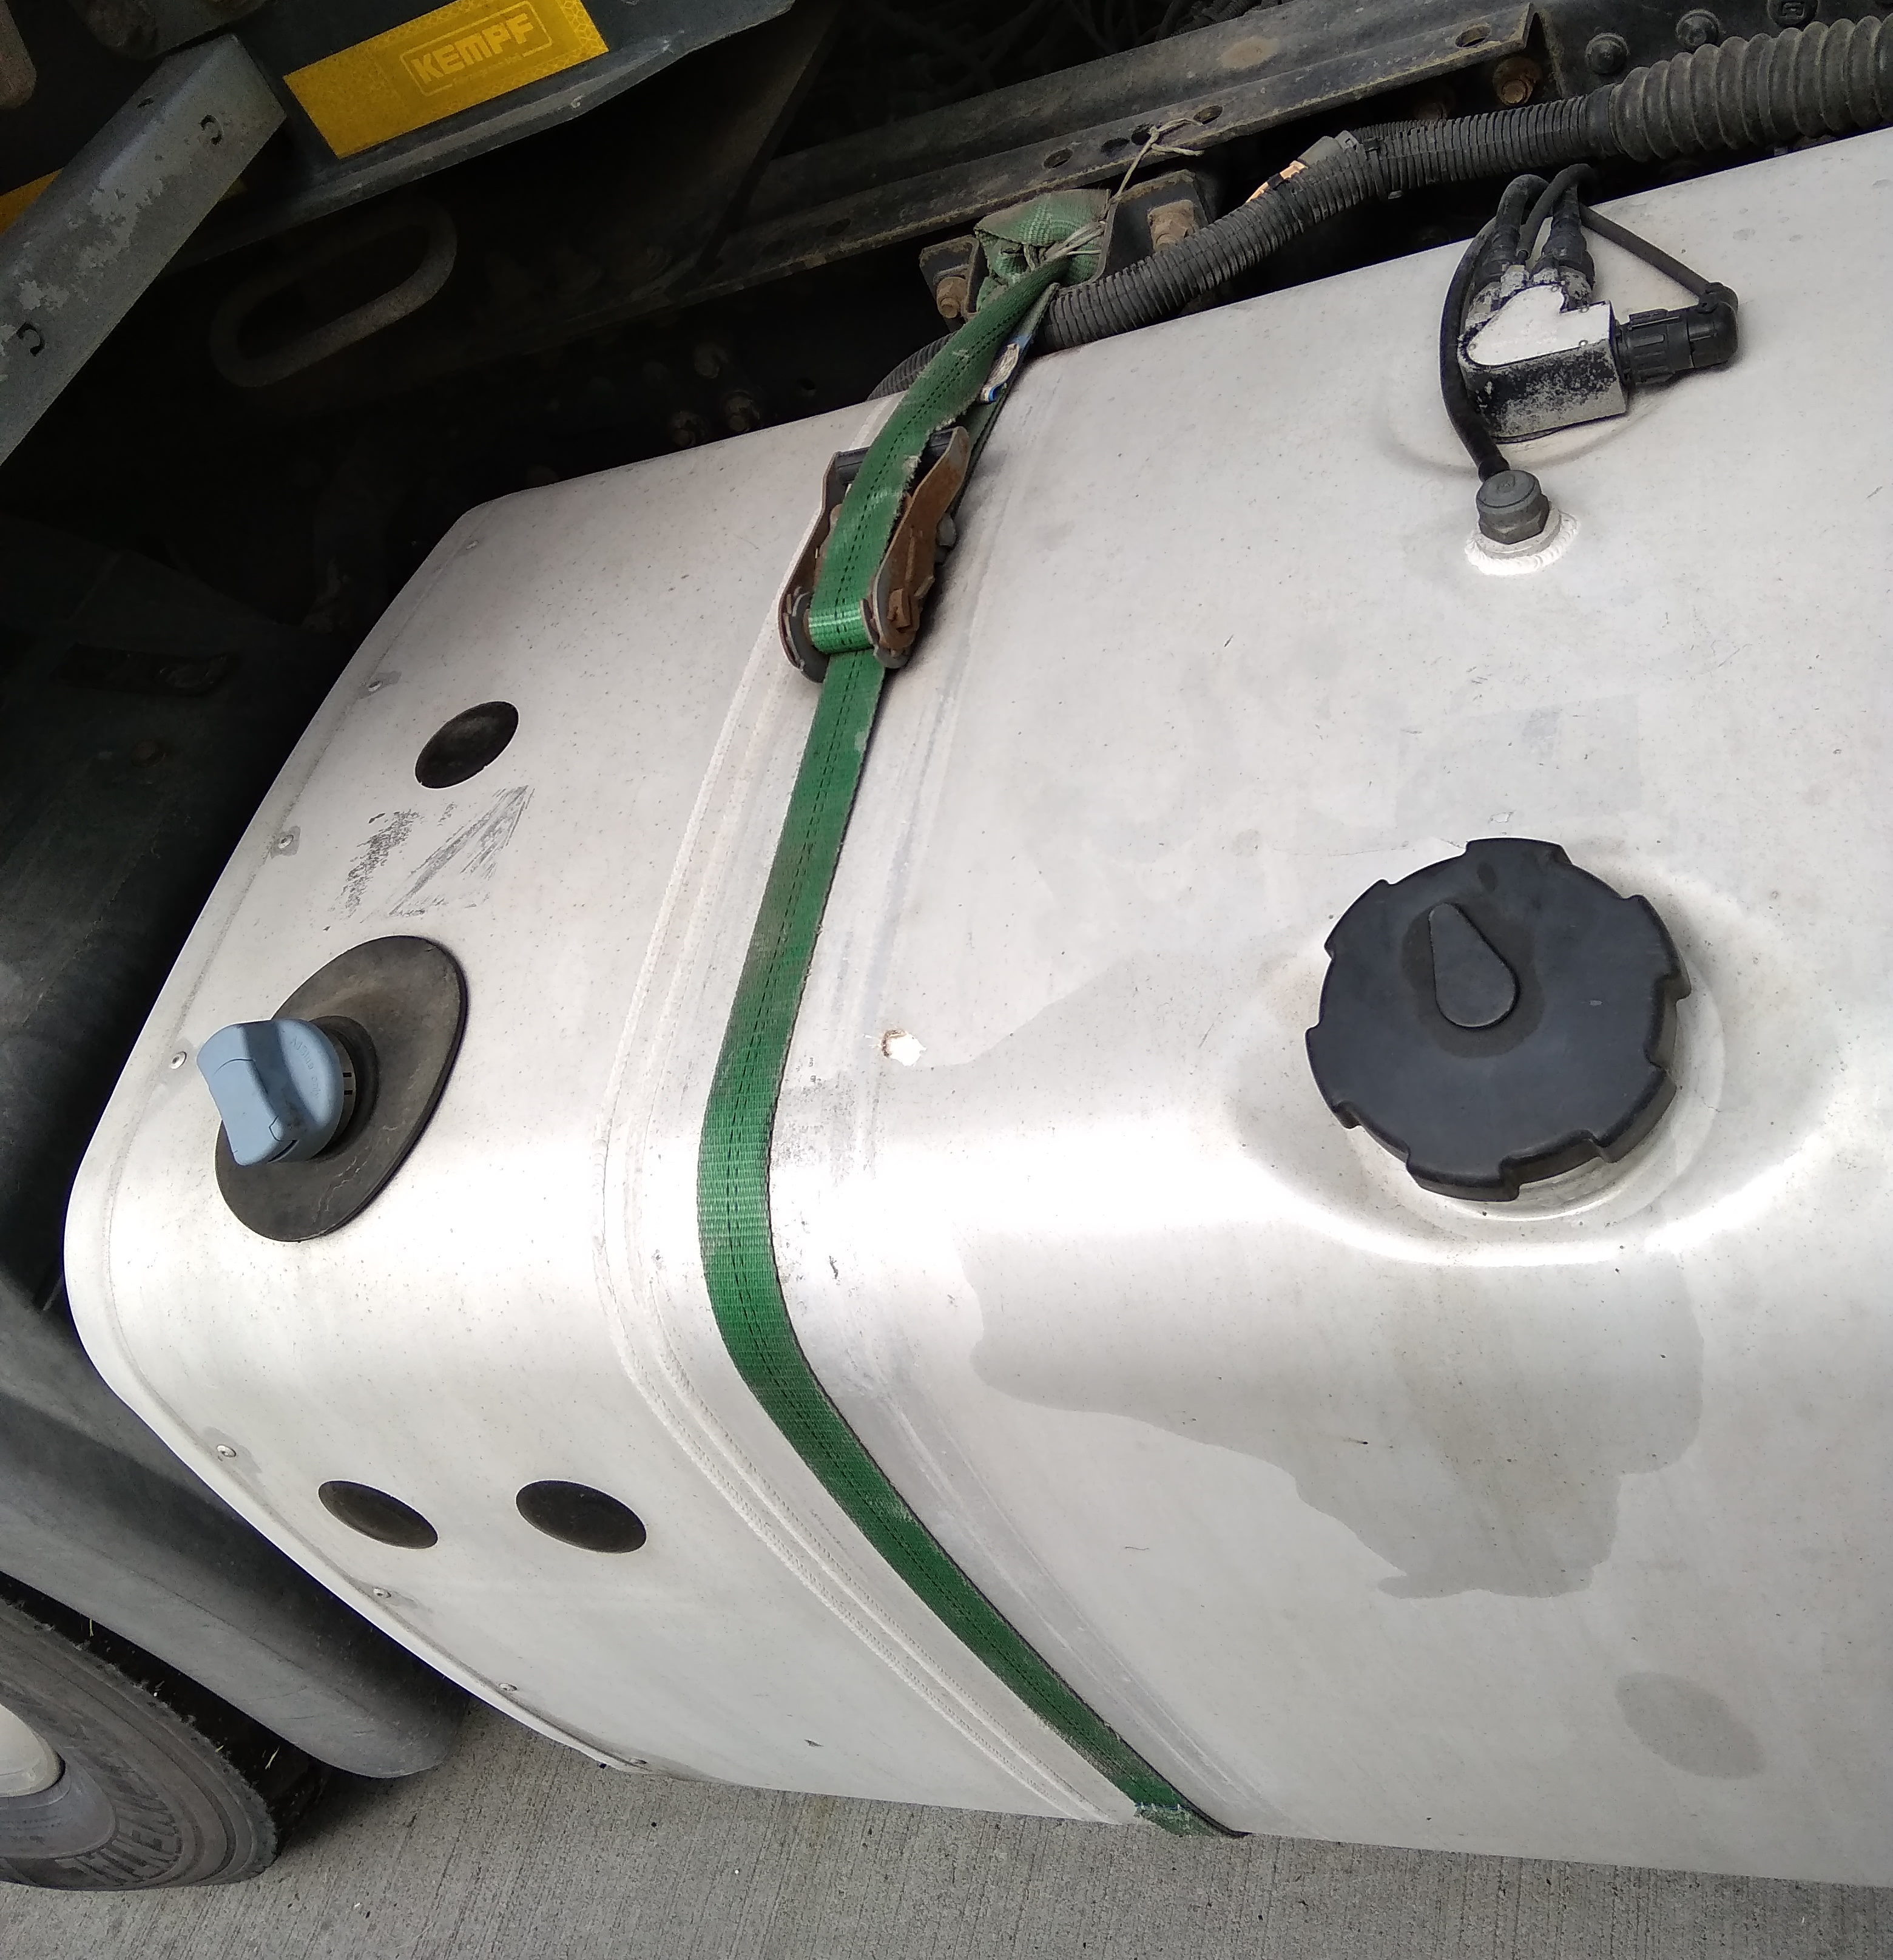 Zbiornik paliwa w ciężarówce zamocowany był pasami i sznurkiem (zdjęcia)